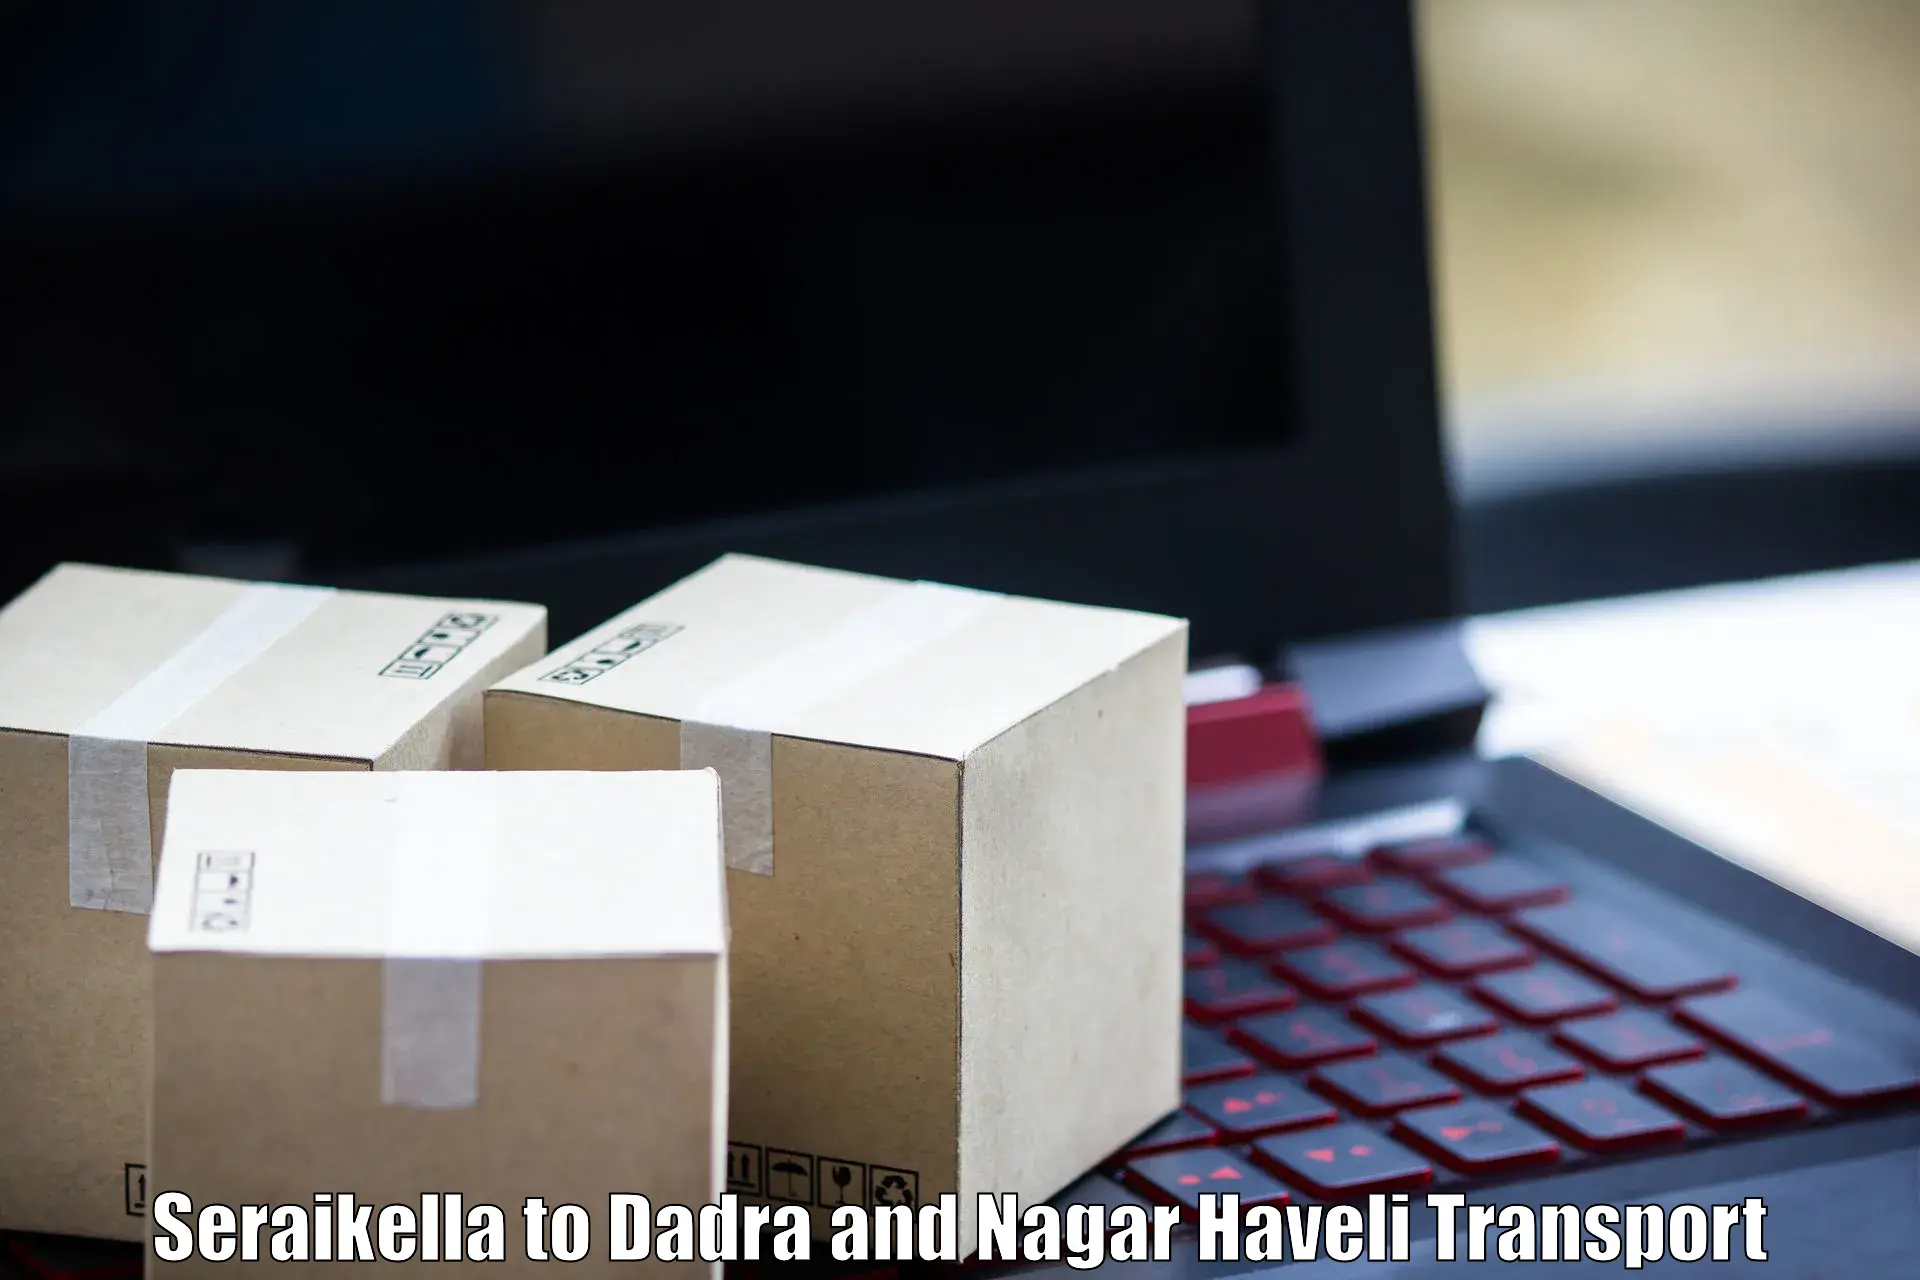 Shipping partner Seraikella to Dadra and Nagar Haveli